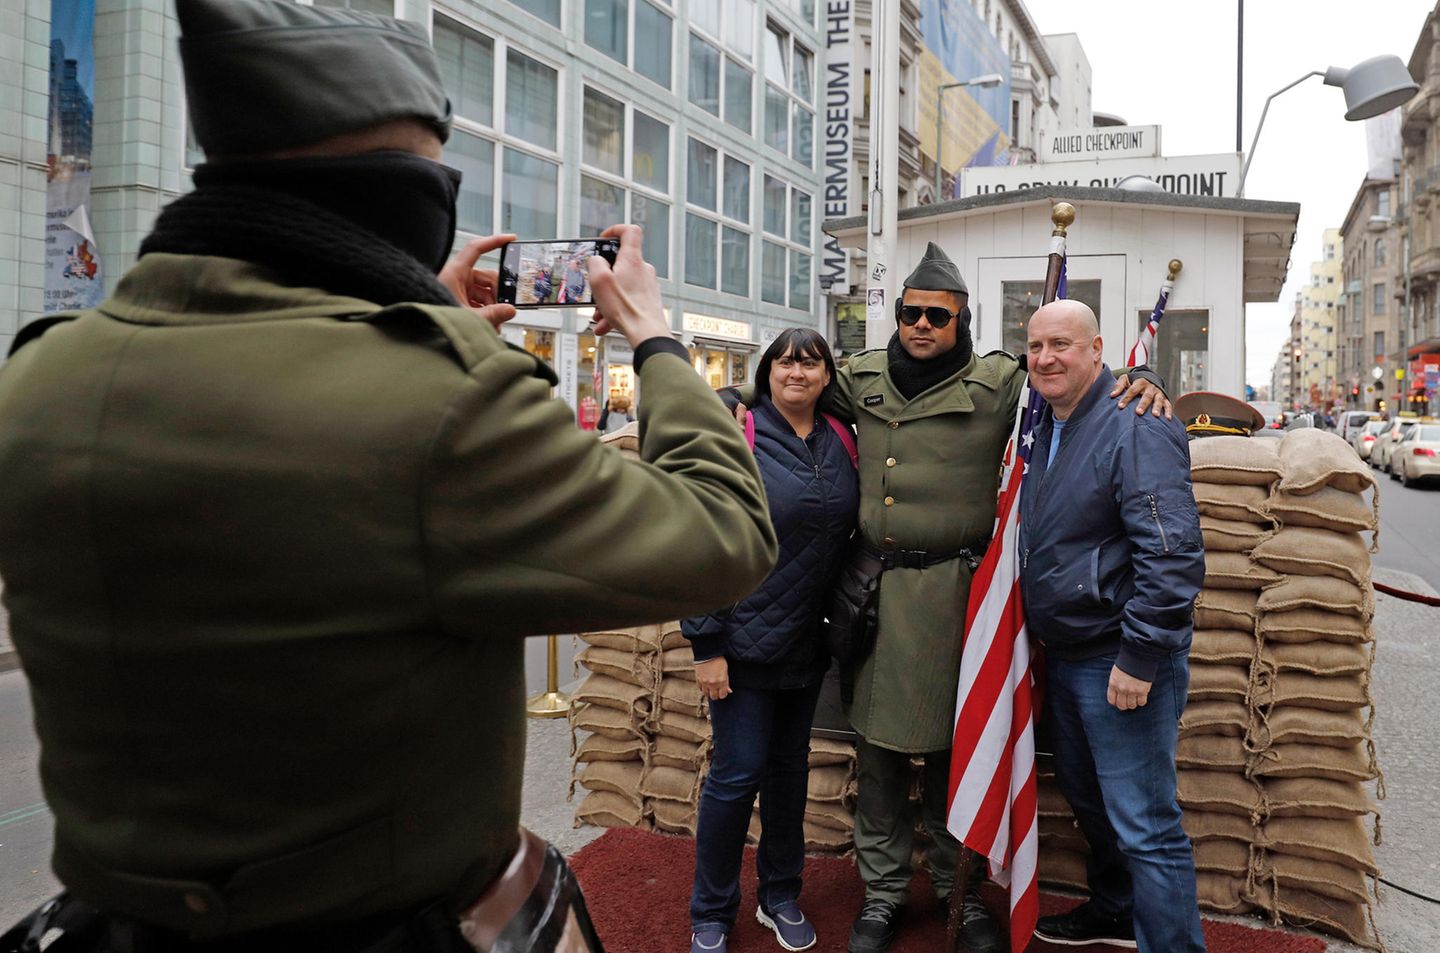 Zwei Touristen aus England lassen sich am Checkpoint Charlie mit einem Mann in US-Uniform fotografieren